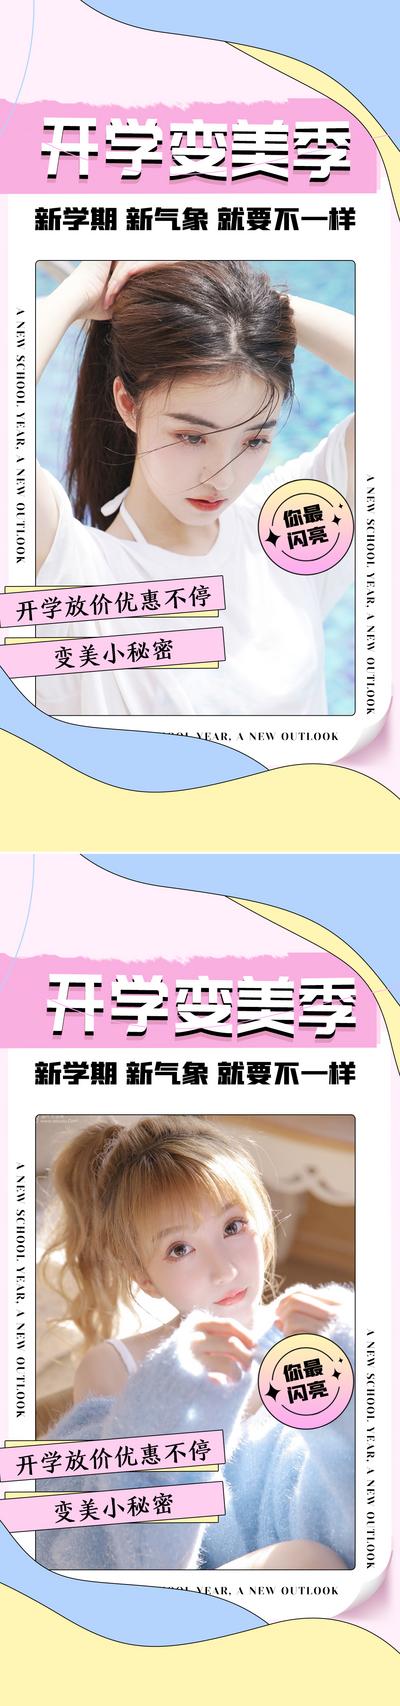 南门网 广告 海报 医美 人物 青春 女神 开学季 